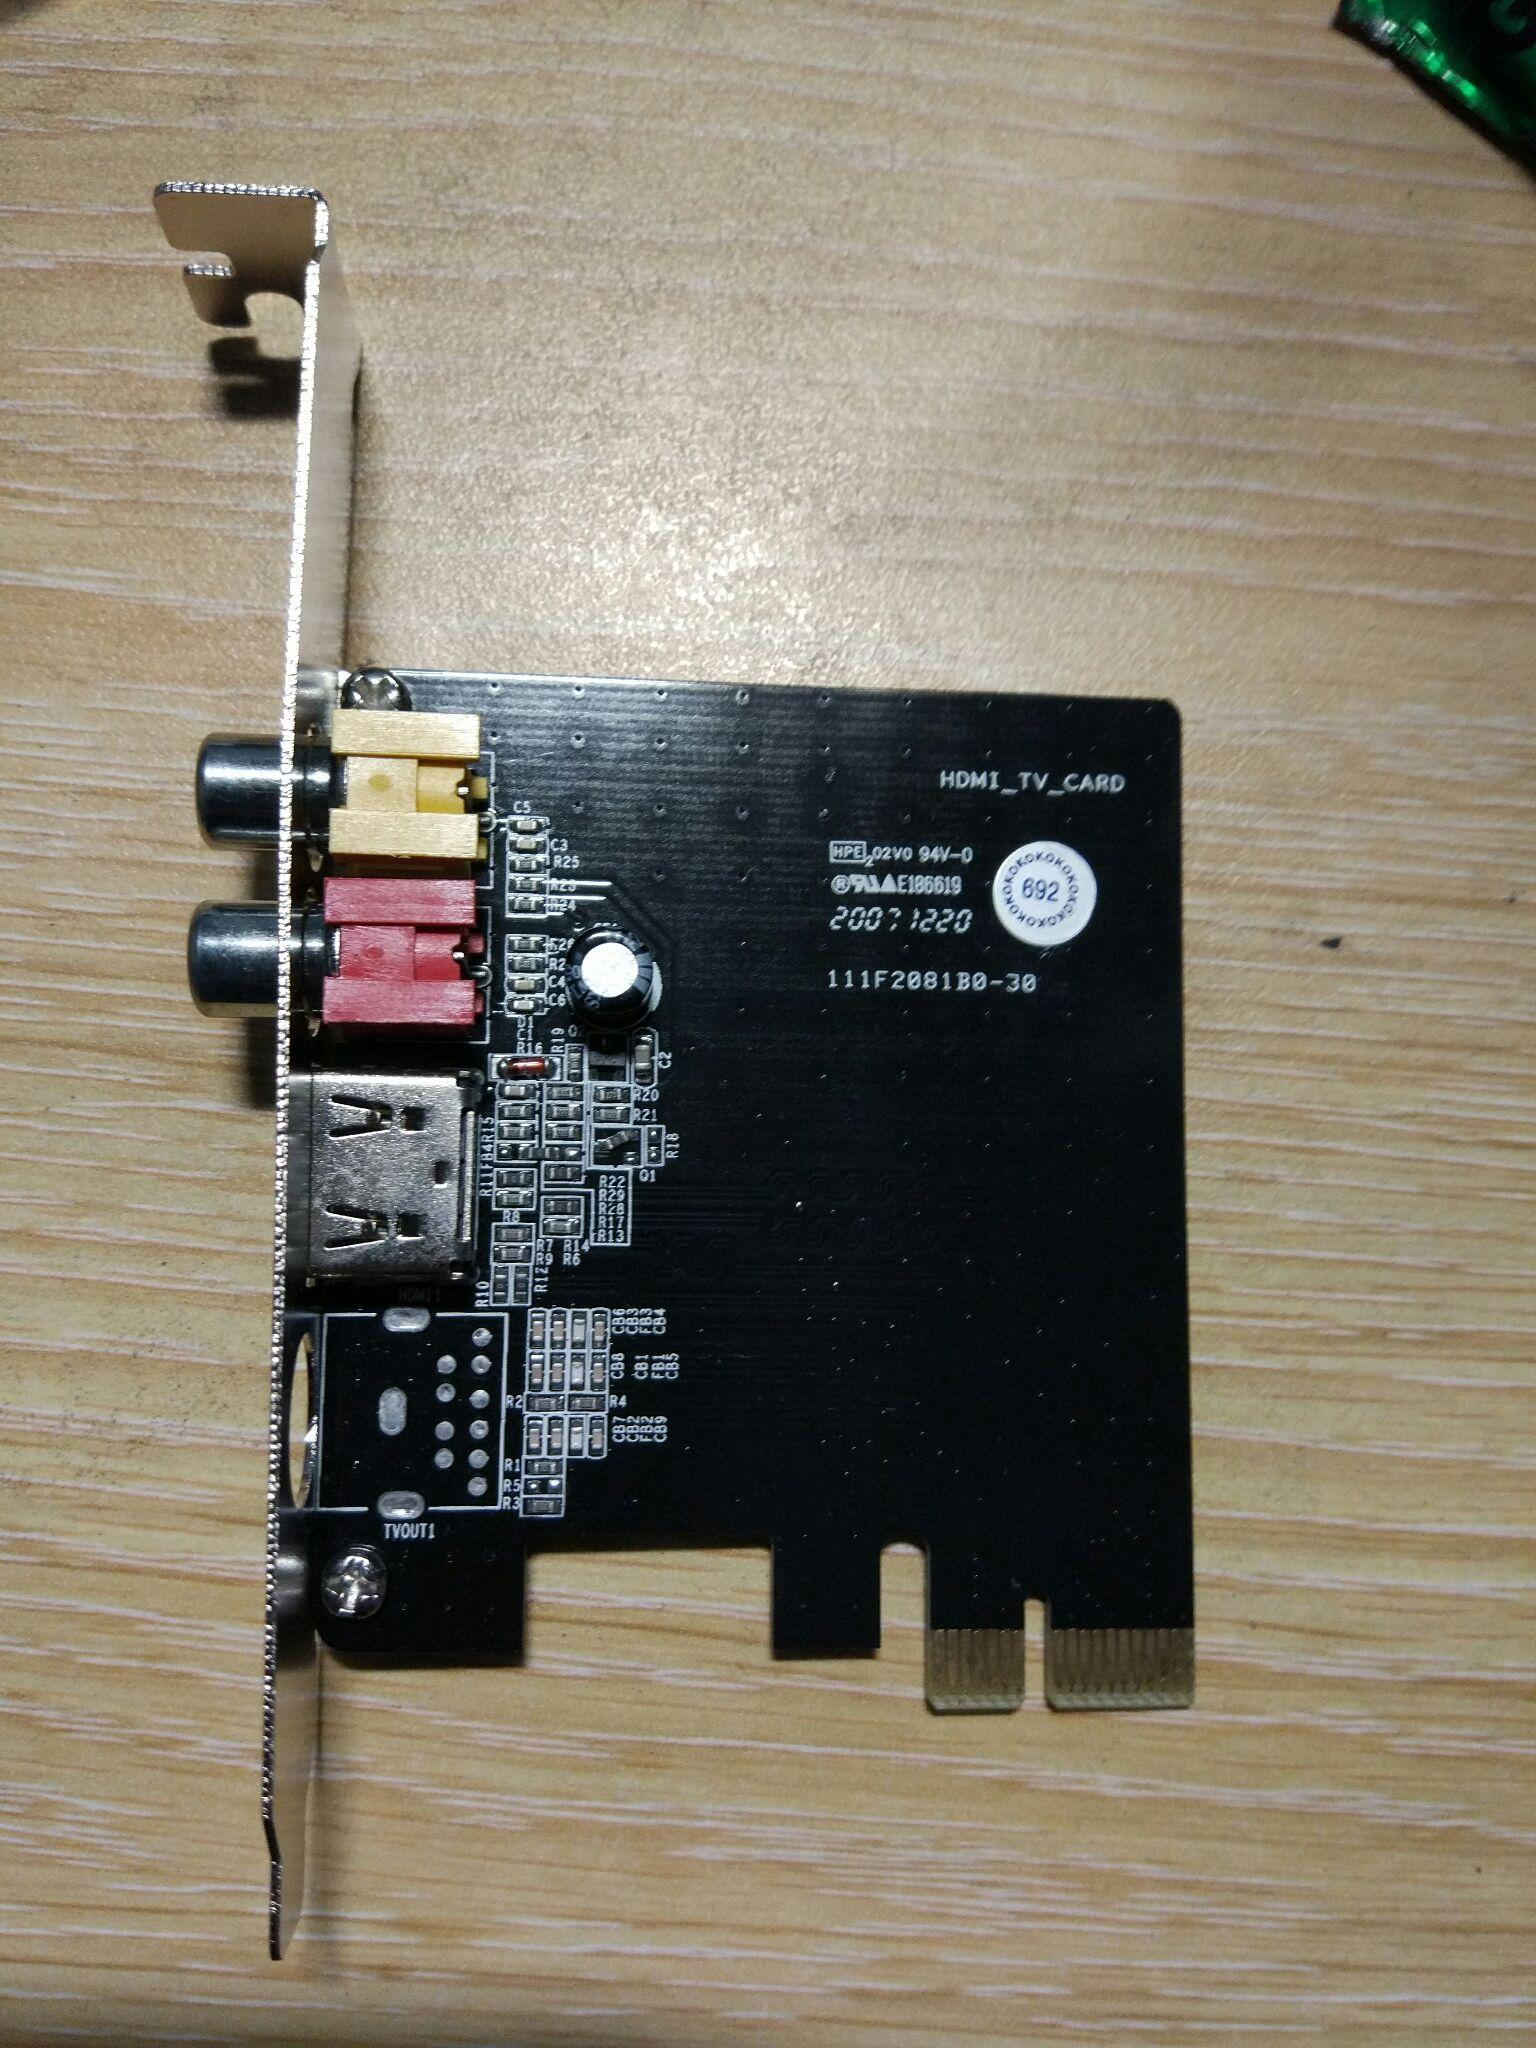 这个HDMI-TV-CARD卡是什么型号的?谁知道相